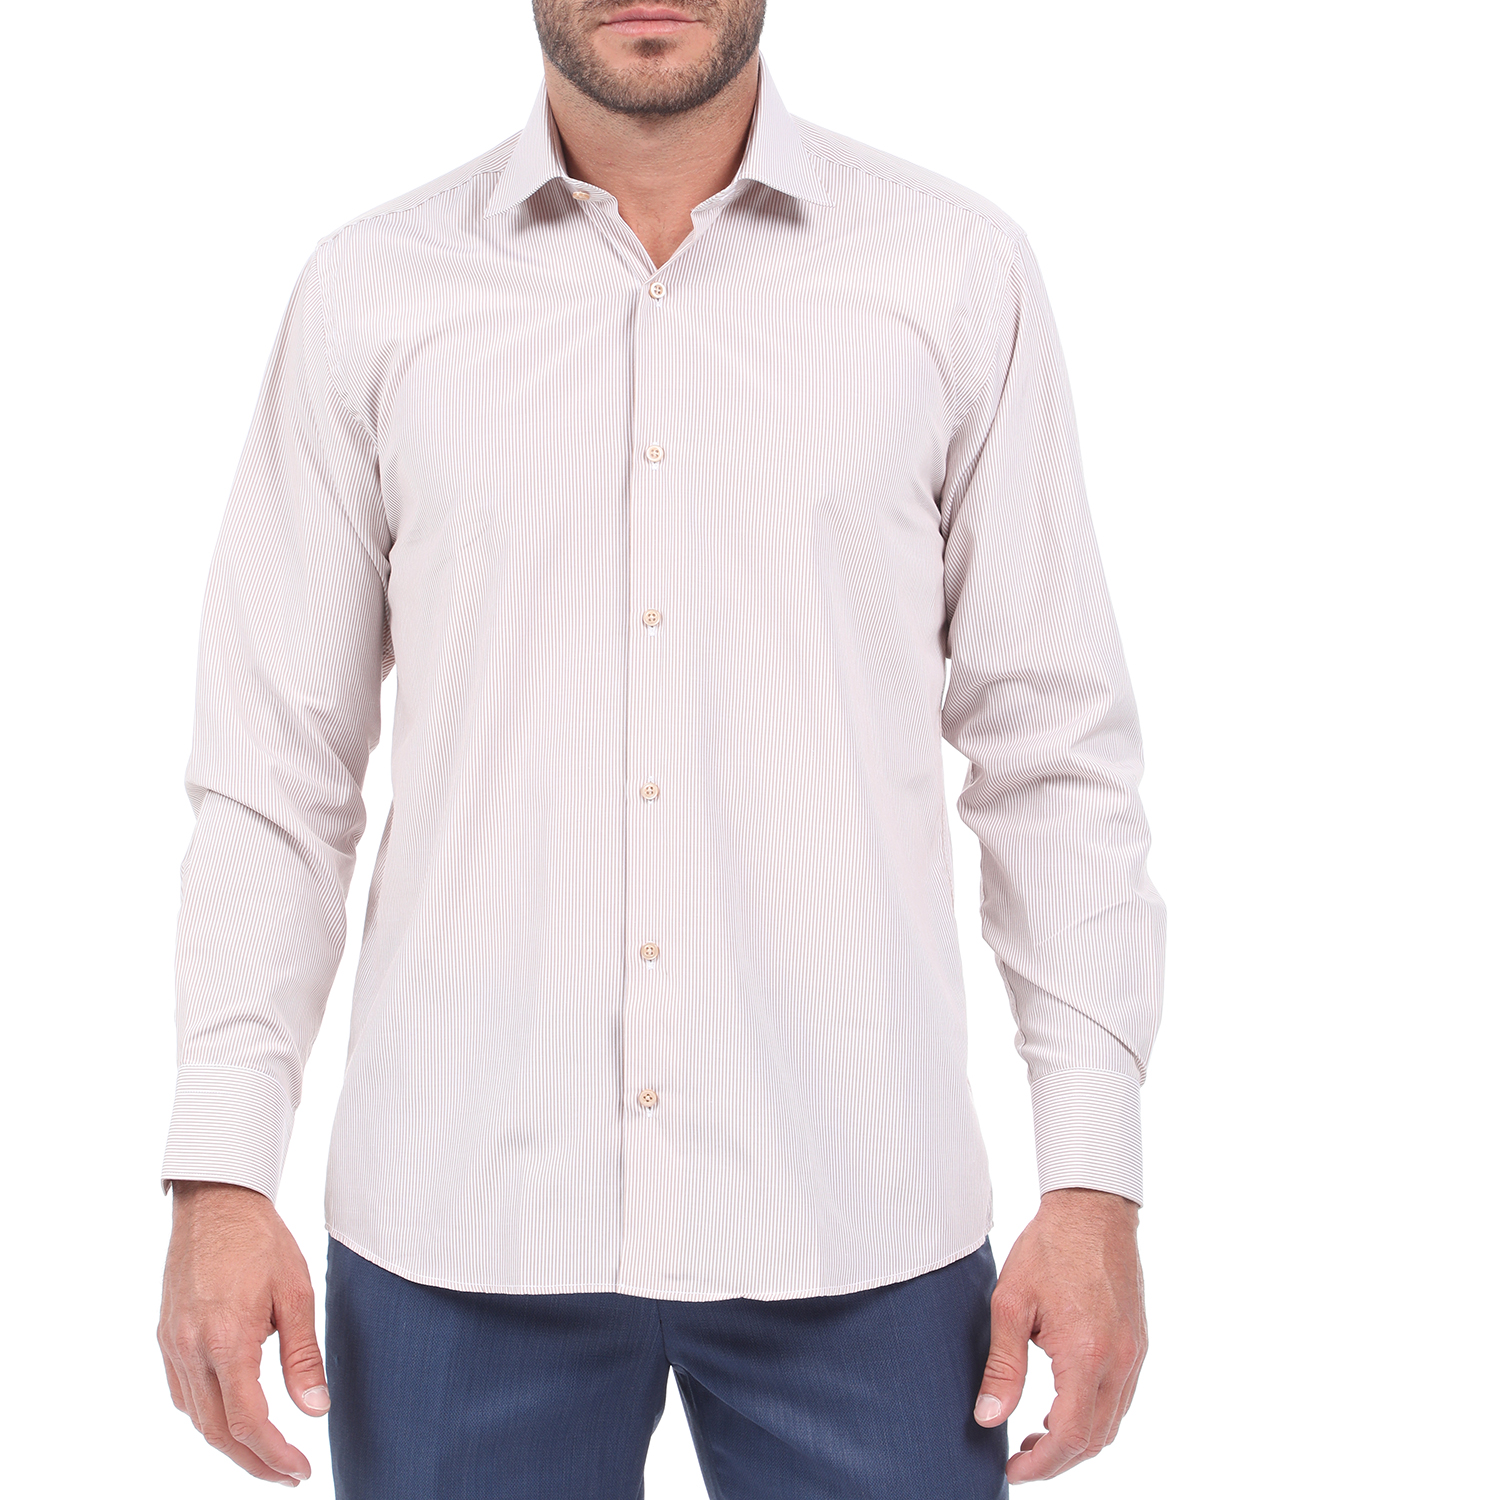 Ανδρικά/Ρούχα/Πουκάμισα/Μακρυμάνικα MARTIN & CO - Ανδρικό πουκάμισο MARTIN & CO REGULAR FIT μπεζ